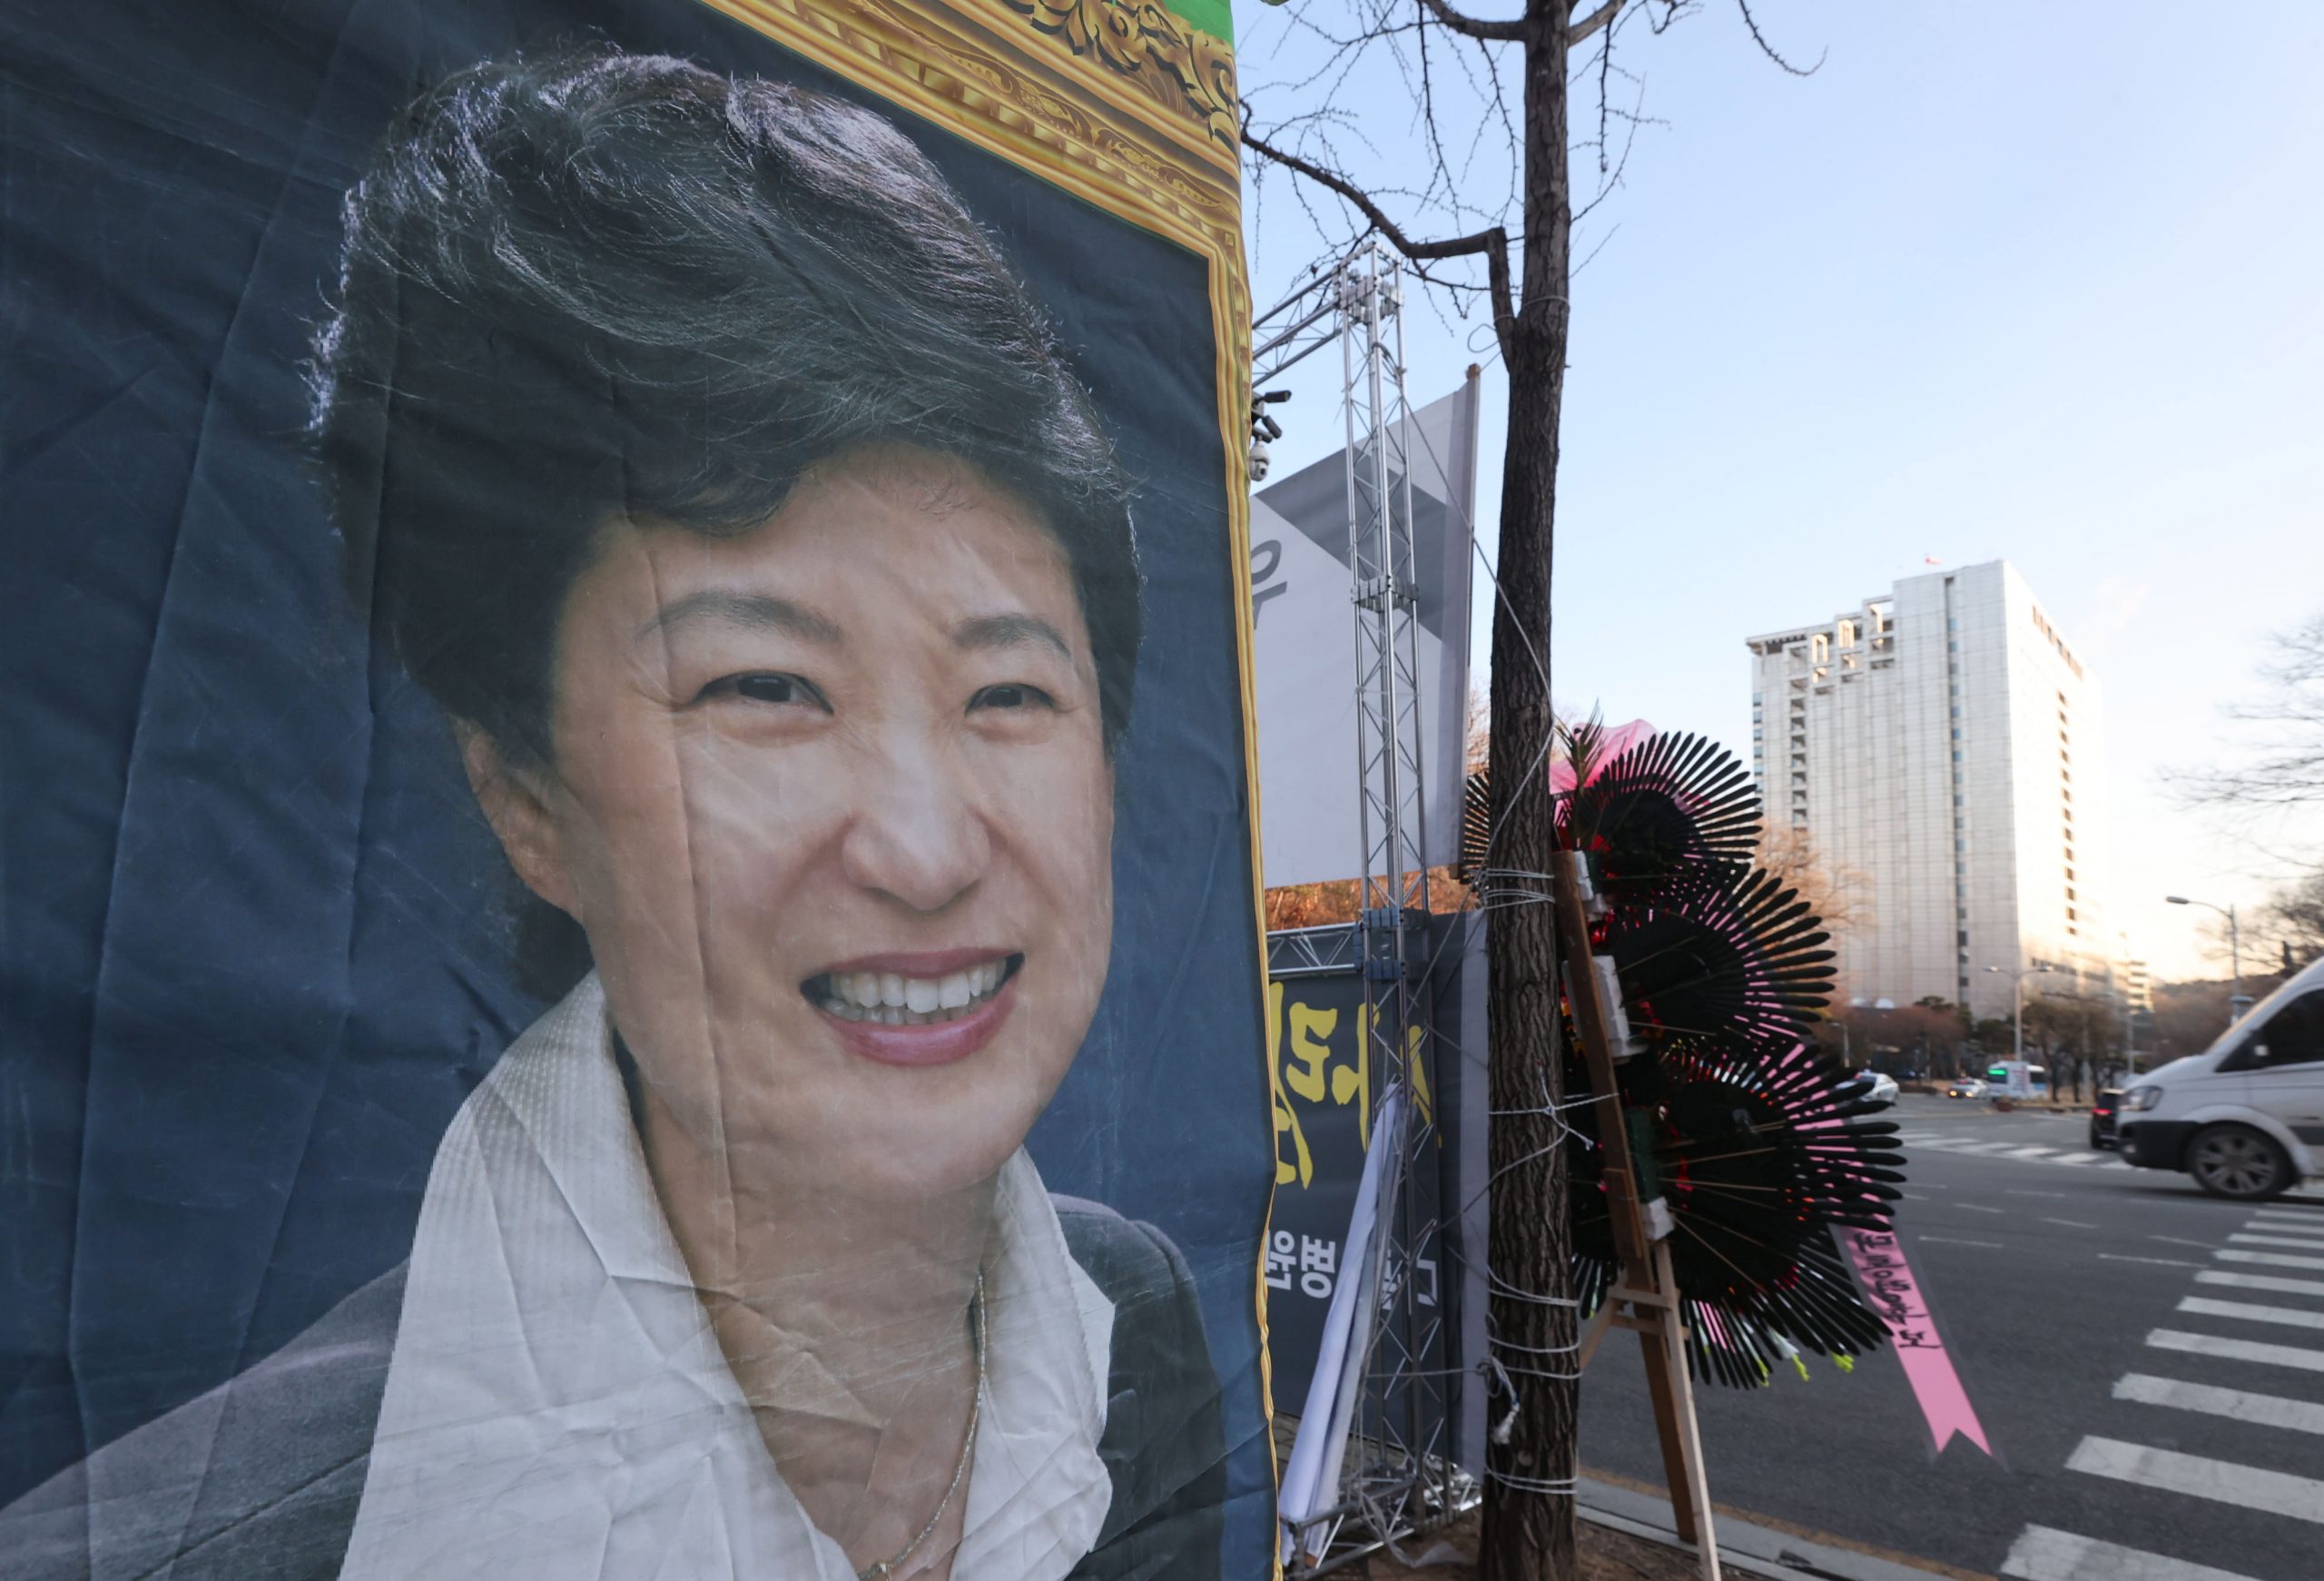 看世界两图)韩国前总统朴槿惠周四晚出狱 料续住院至明年2月